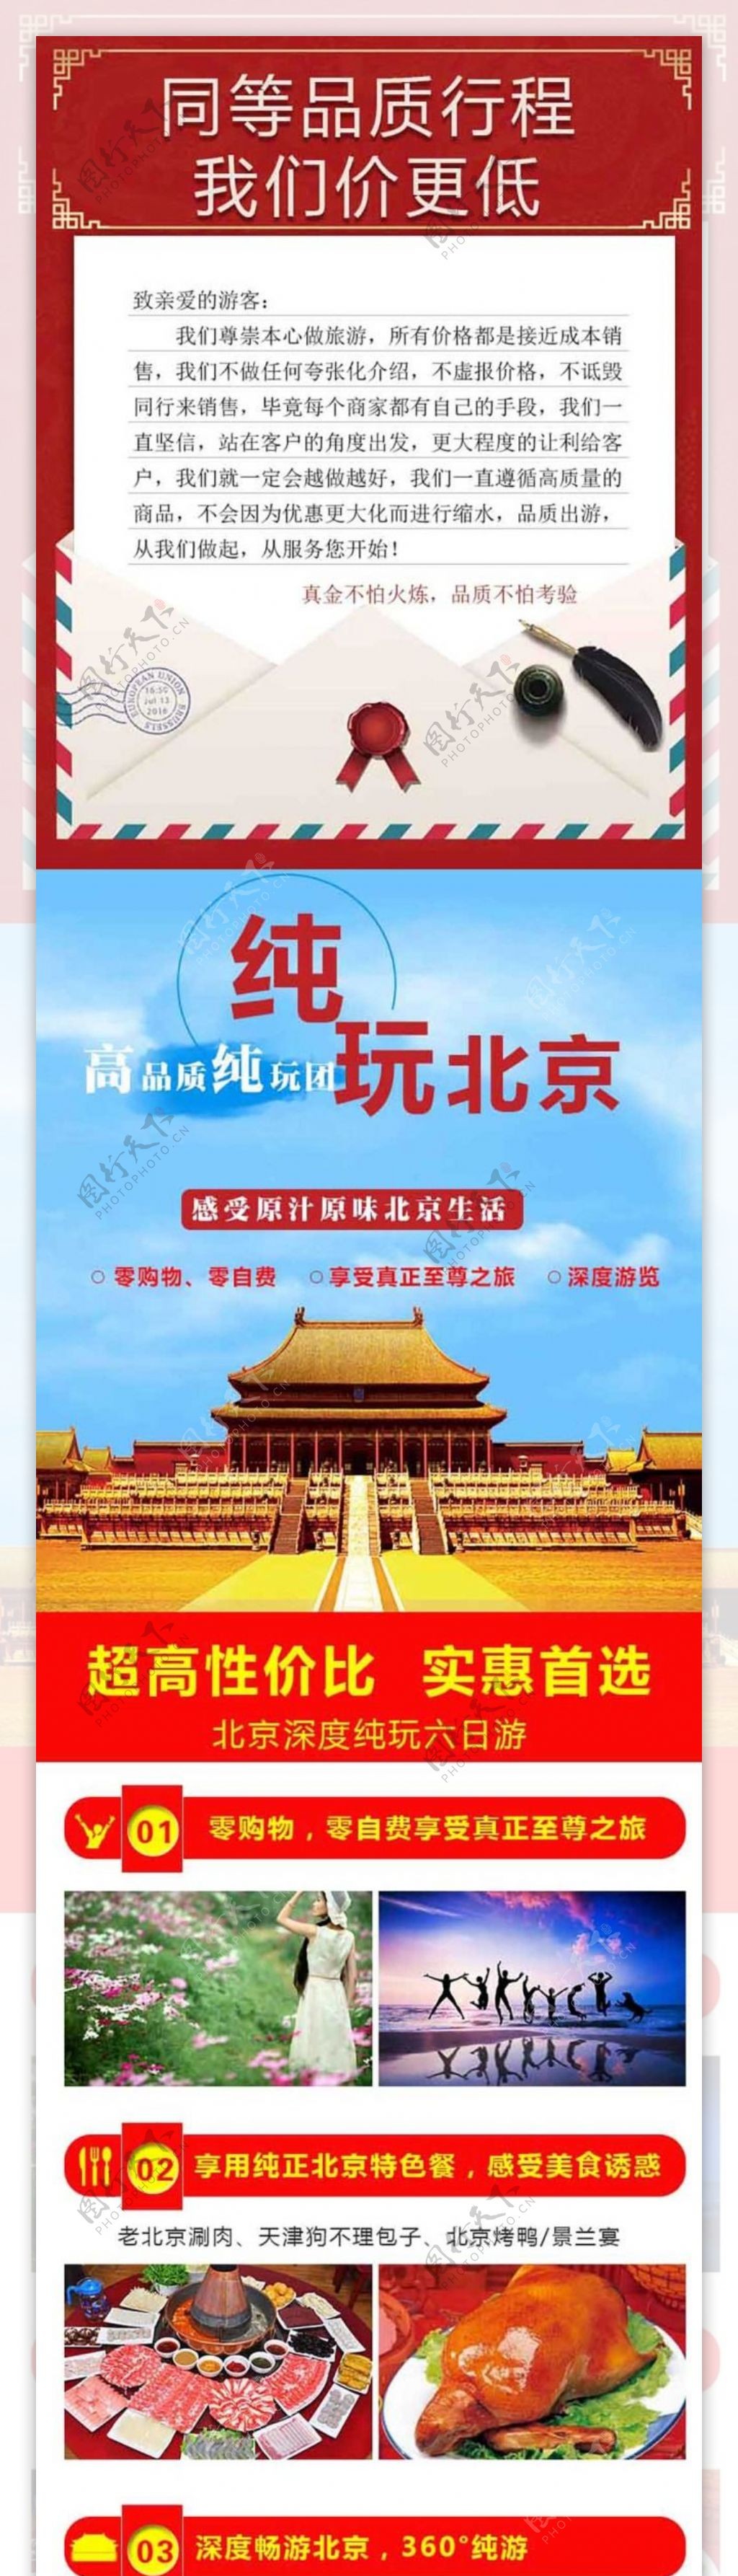 北京旅游详情页